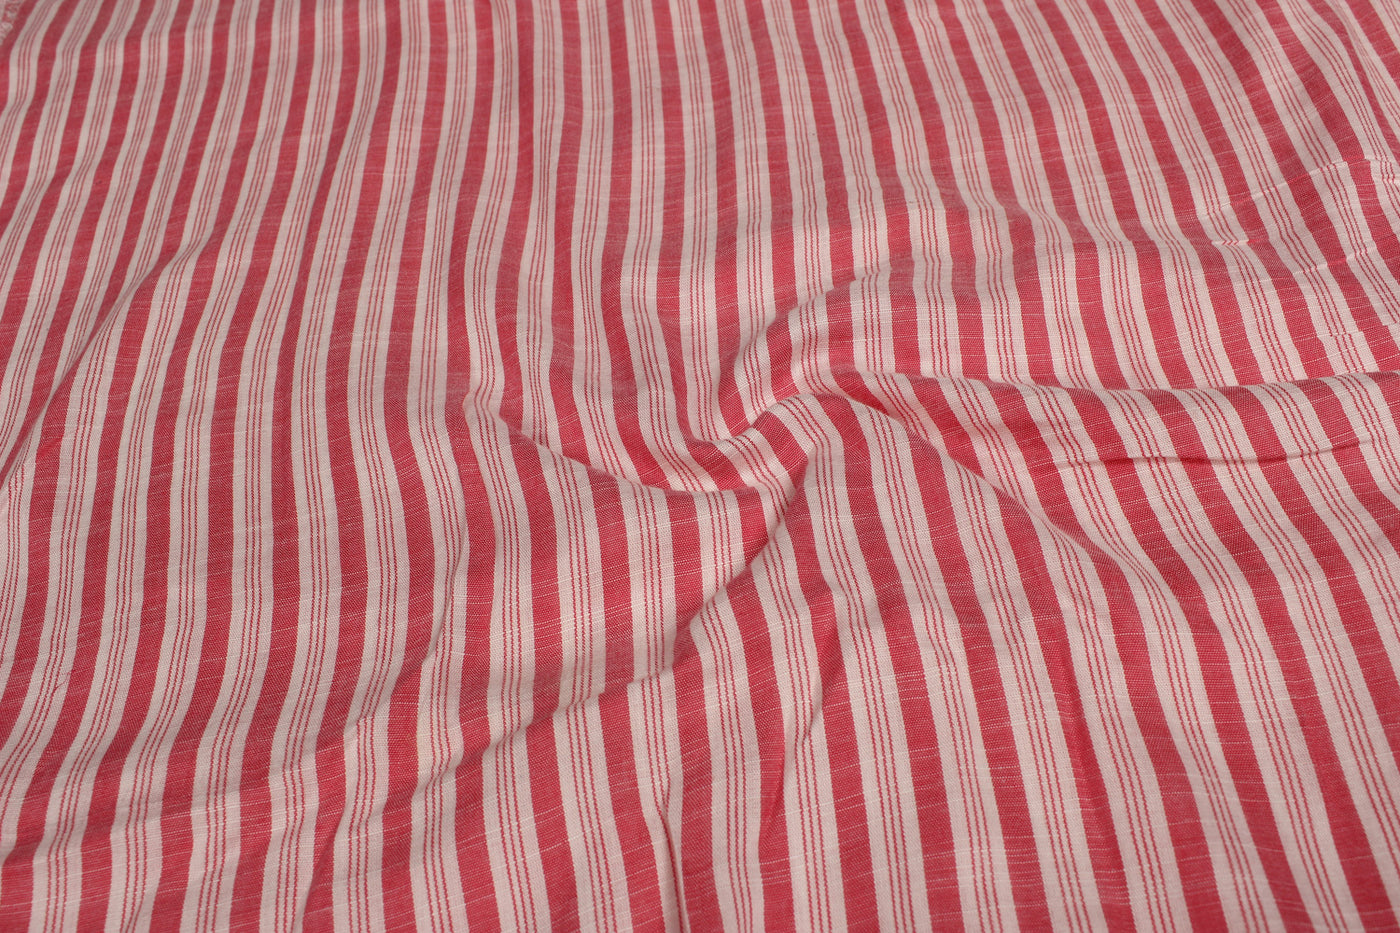 White & Red Stripes Yarn Dyed Rayon Slub Fabric